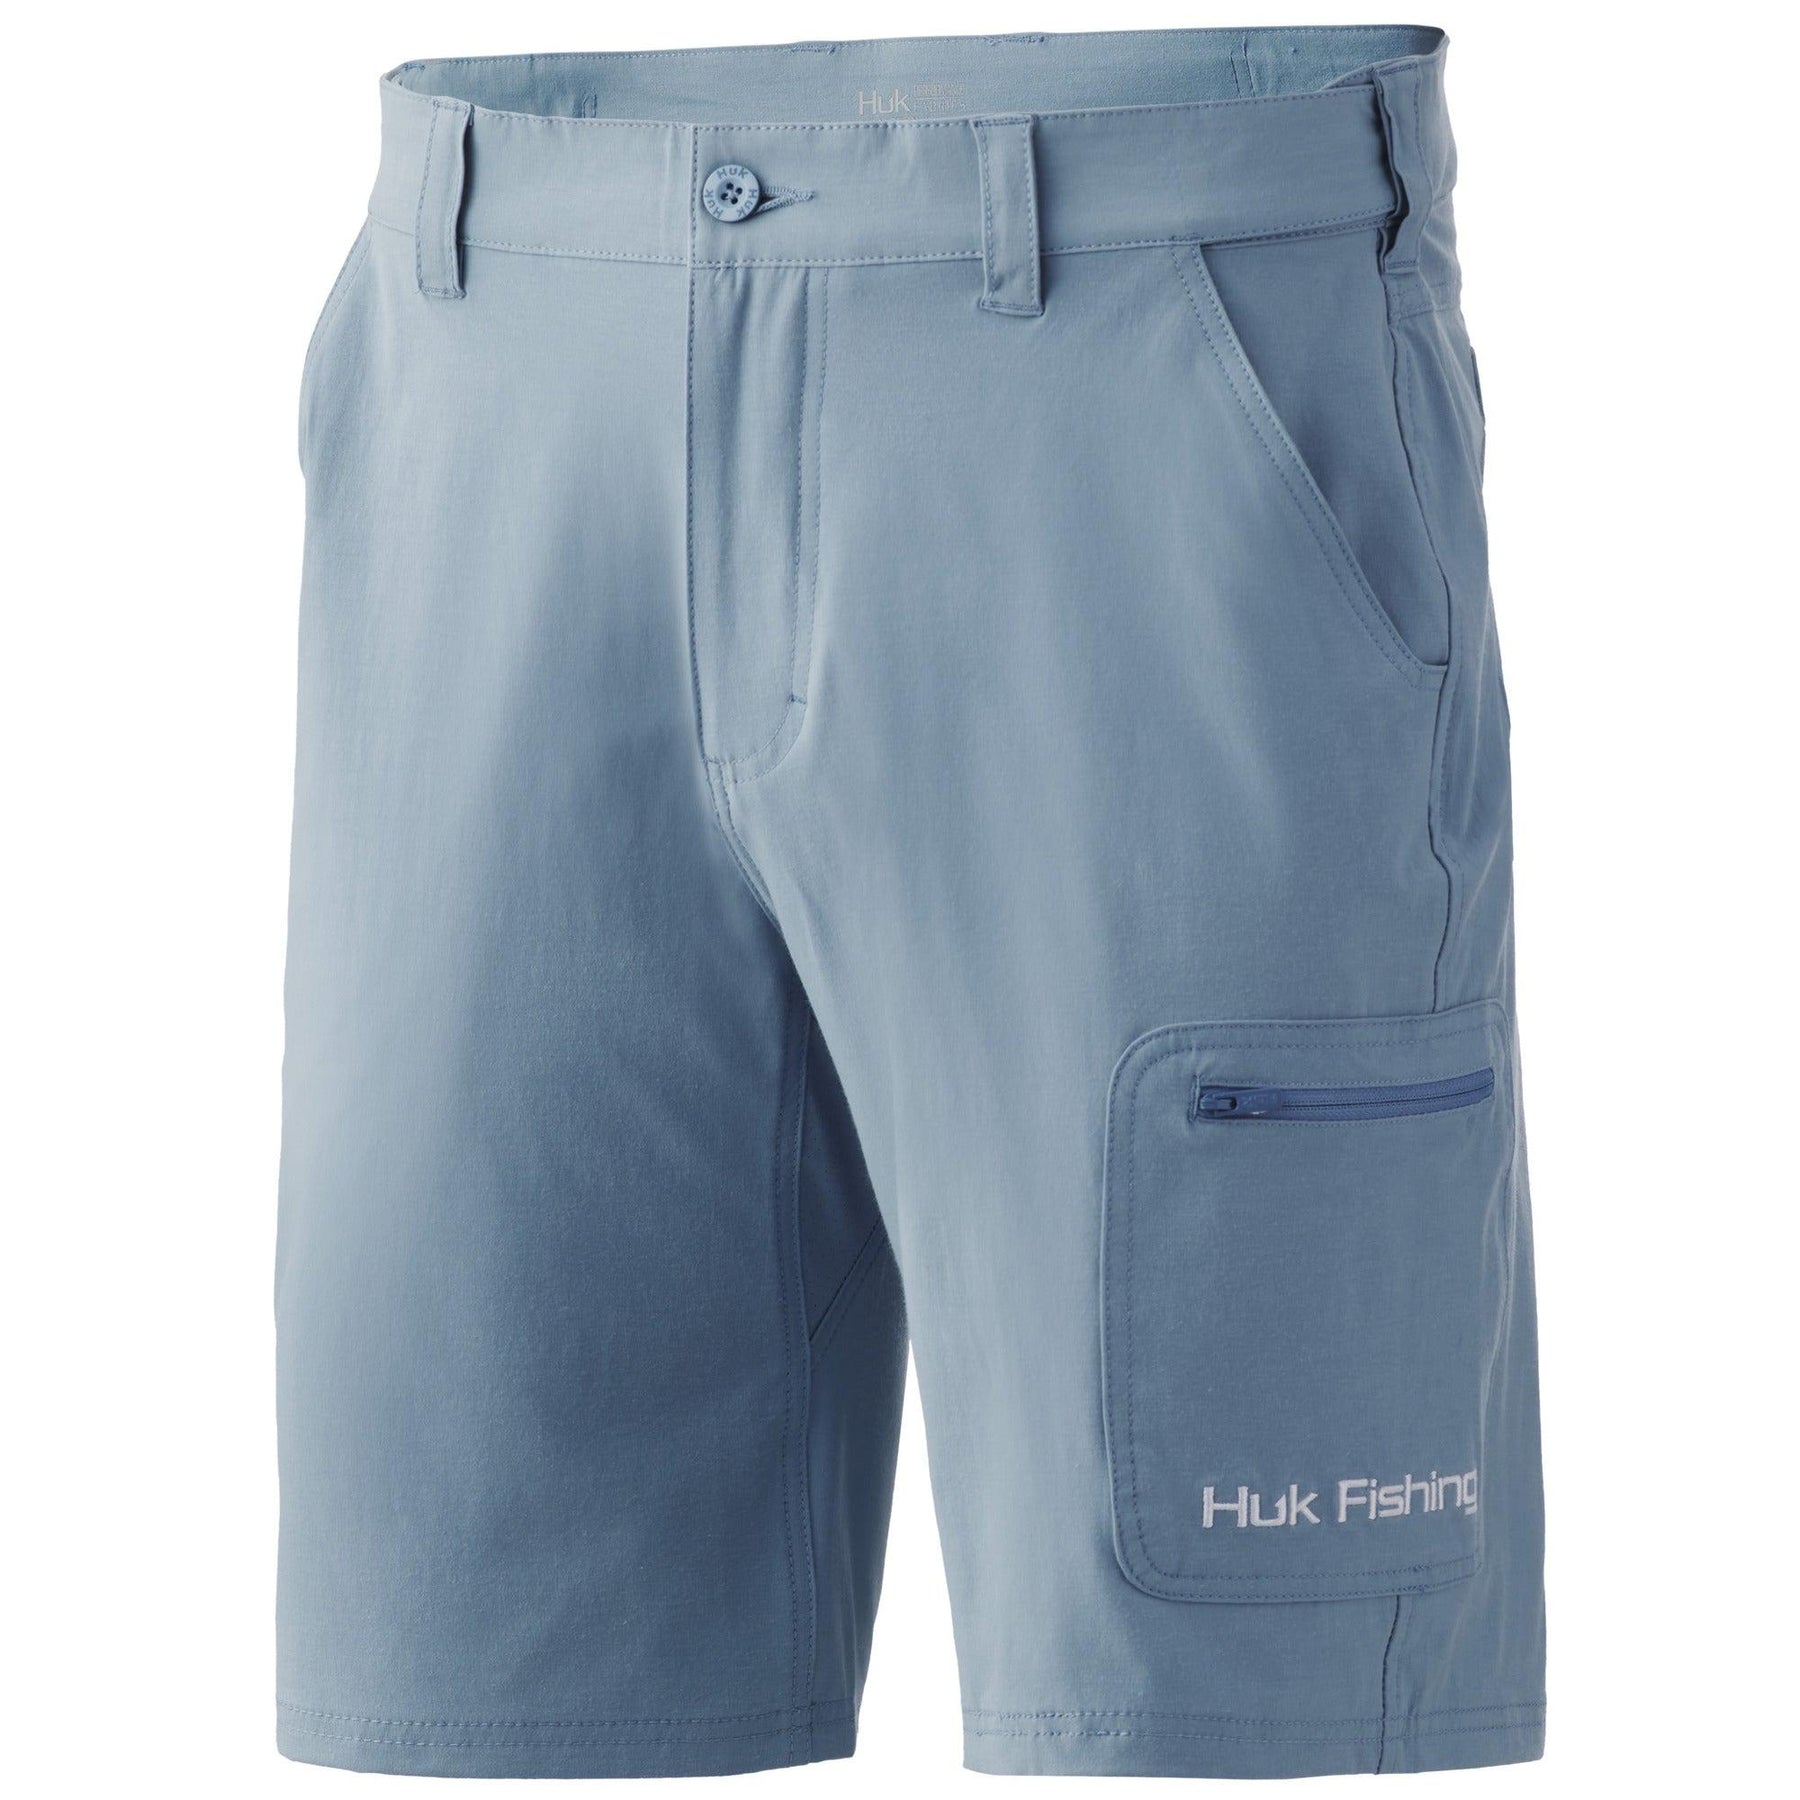 Huk Next Level 10.5 Shorts - Melton Tackle